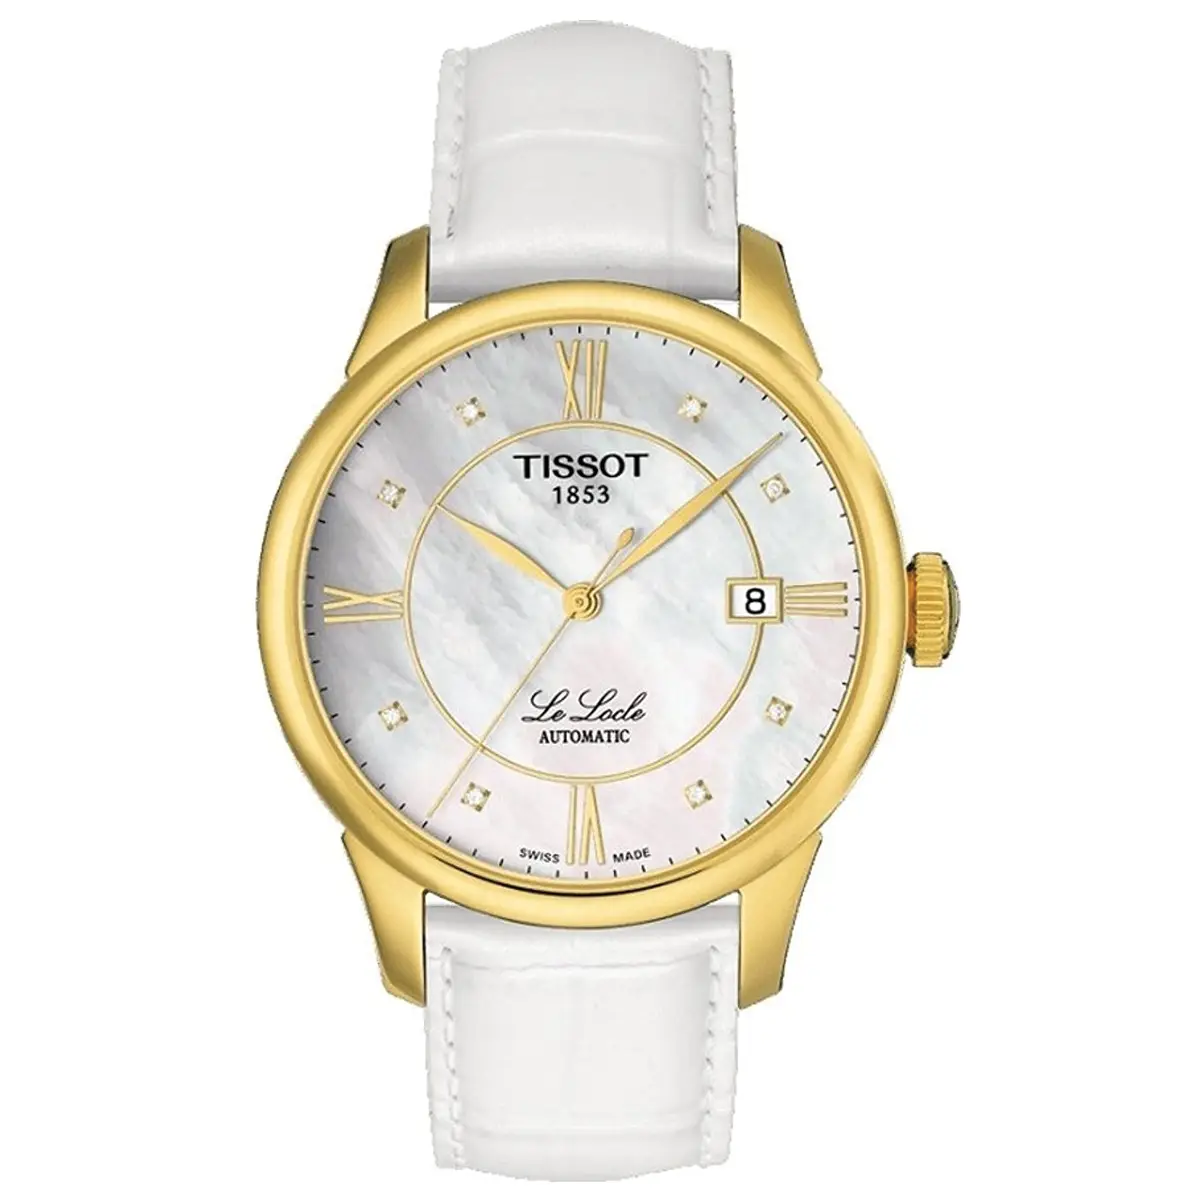 Đồng hồ Tissot Lelocle Automatic T41.5.453.86 mặt số xà cừ. Dây đeo bằng da. Thân vỏ bằng thép mạ PVD yellow gold.